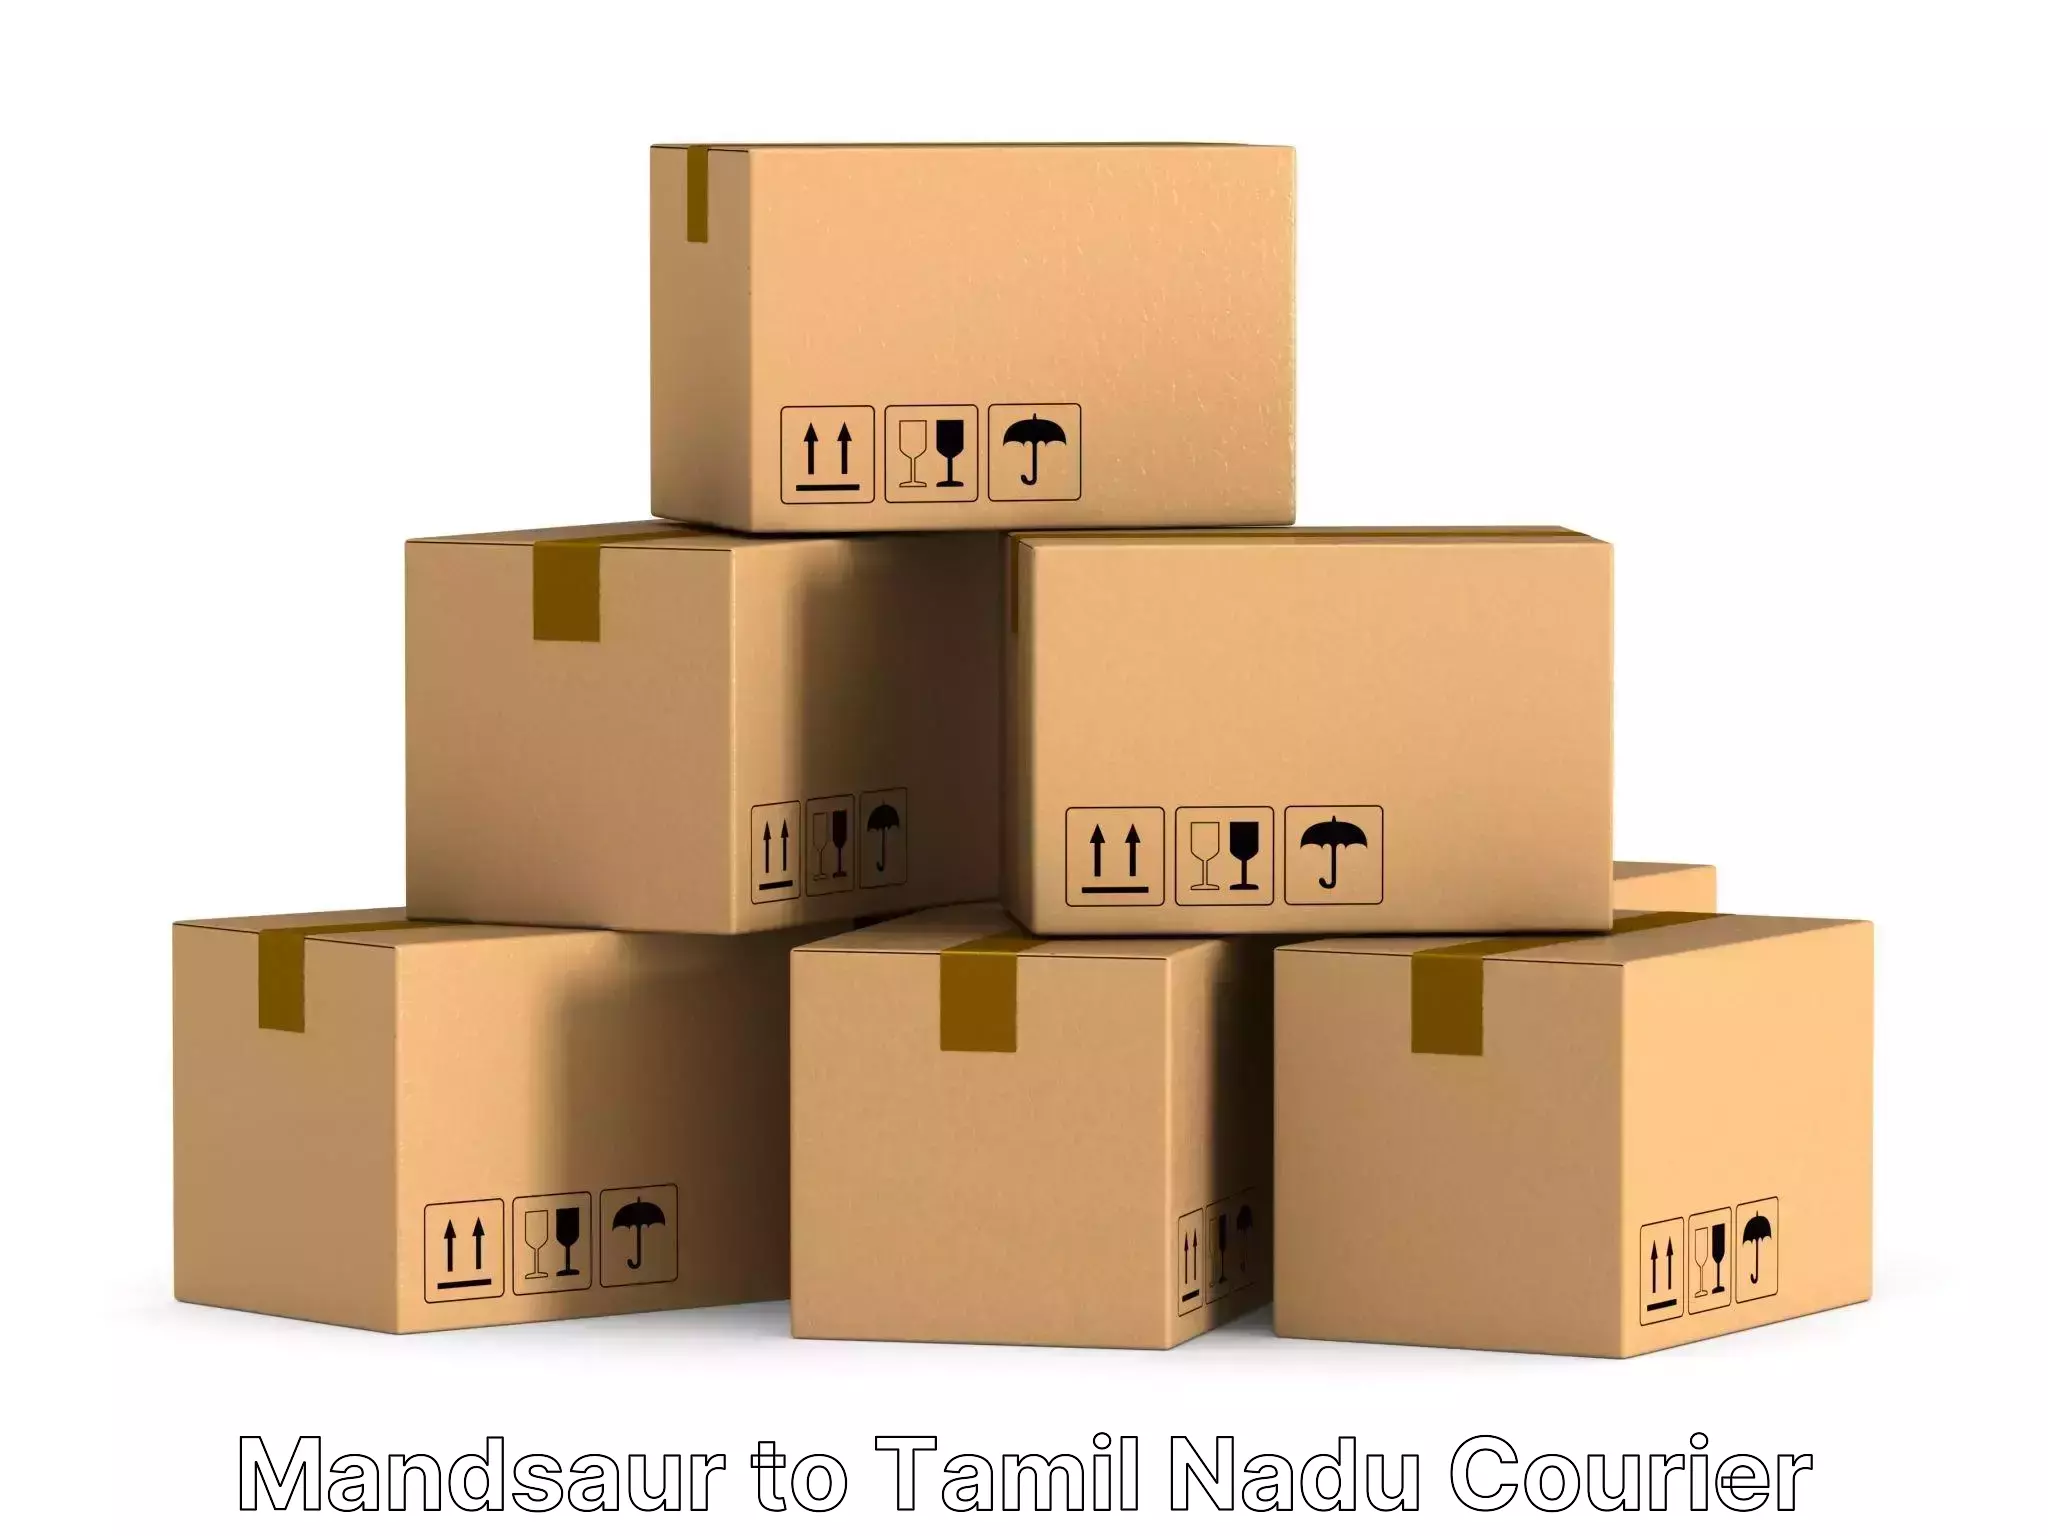 Expert household relocation Mandsaur to Amrita Vishwa Vidyapeetham Coimbatore